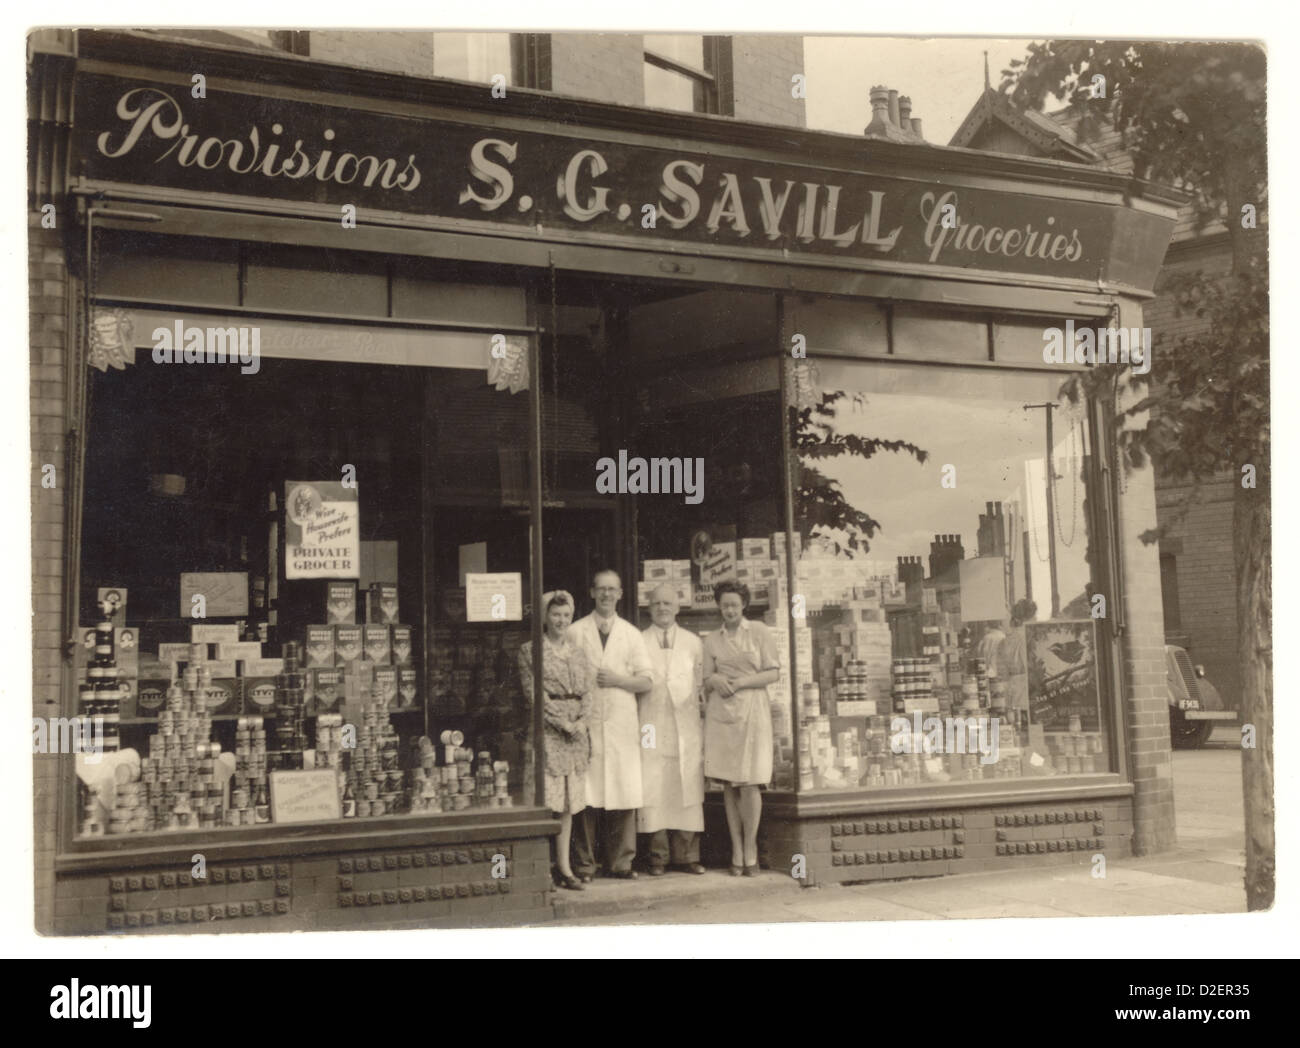 Photographie originale de la boutique de provisions et d'articles d'épicerie S.C. Savill, avec propriétaire/propriétaire et personnel - marchandises exposées dans la fenêtre, dans les années 1930 ou 1940, au Royaume-Uni Banque D'Images